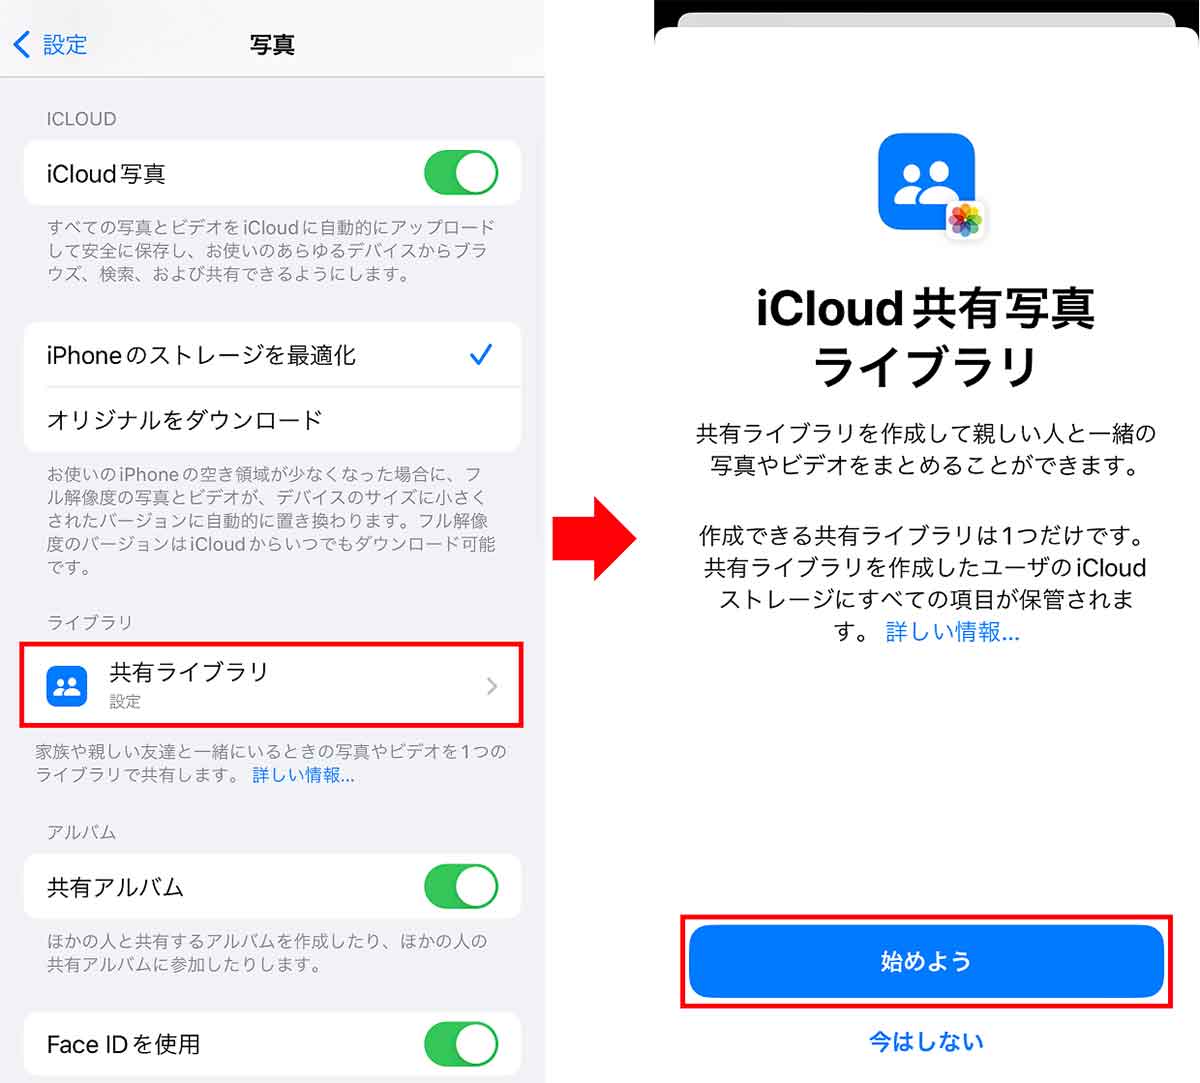 「iOS 16.1」で追加された機能1